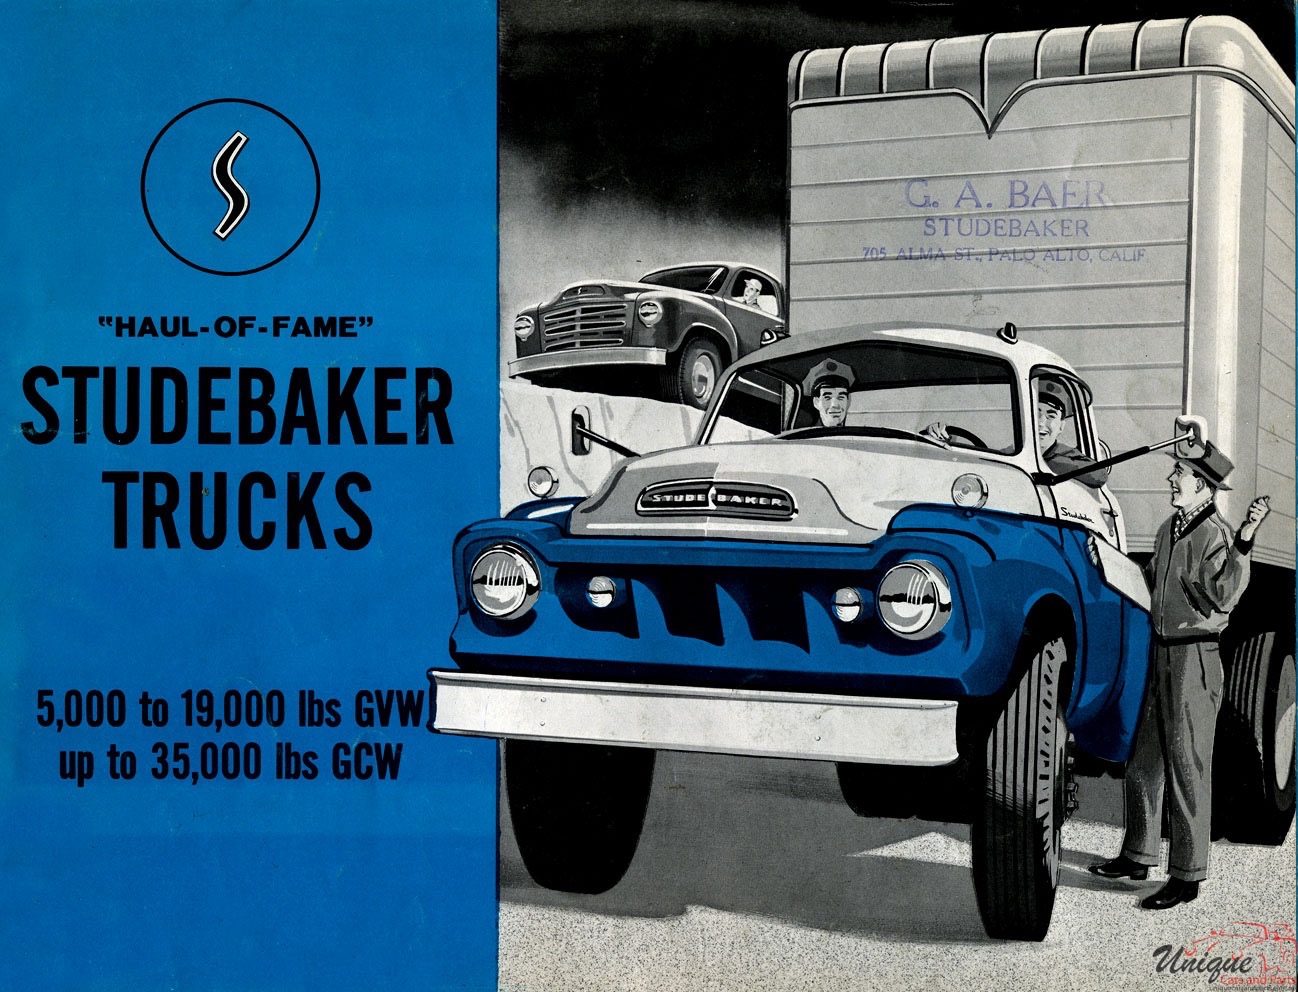 1959 Studebaker Trucks Brochure